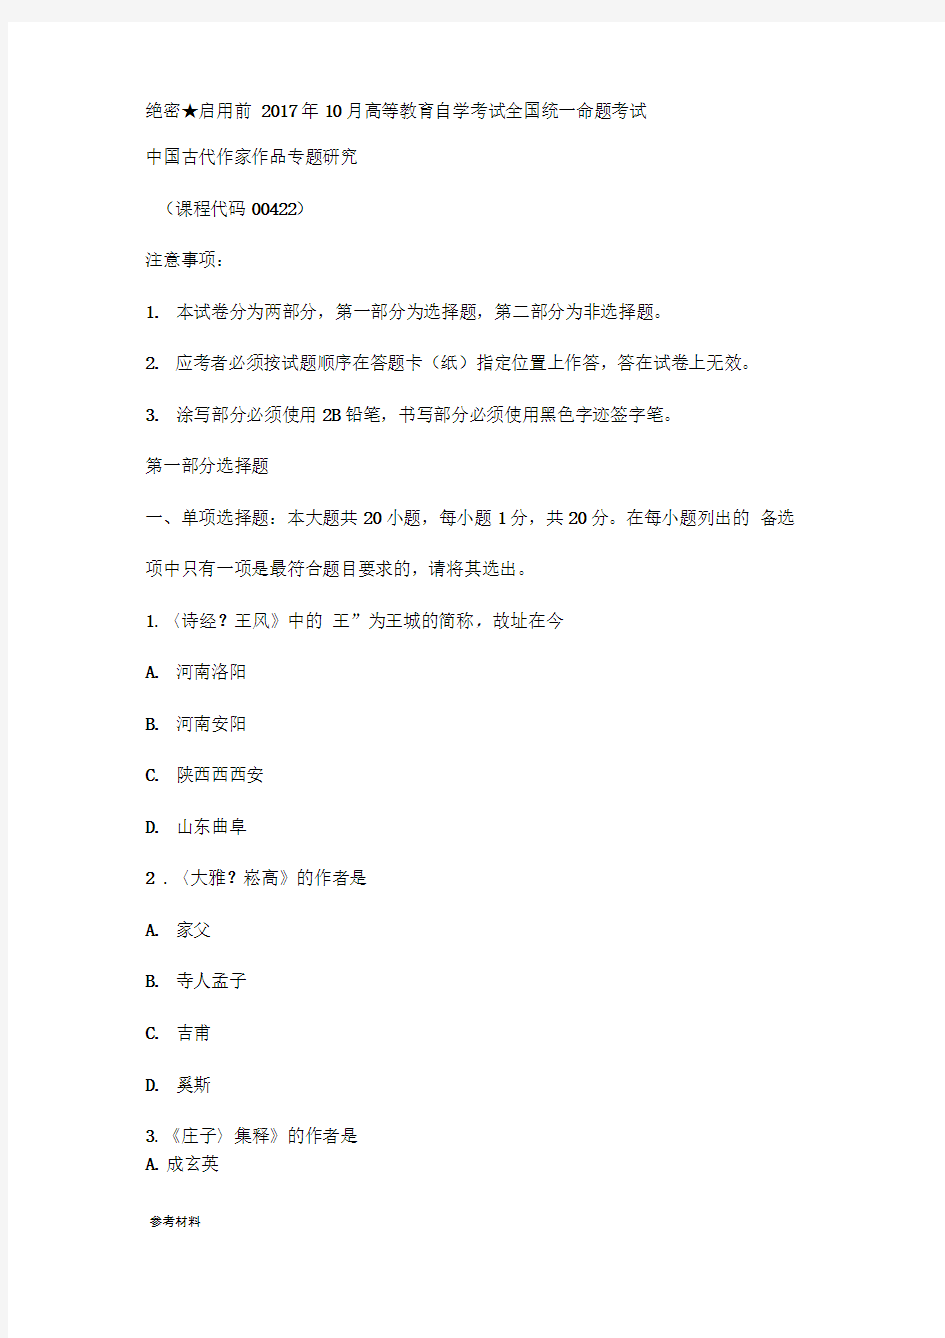 00422中国古代作家作品专题研究_17.10自学考试真题版